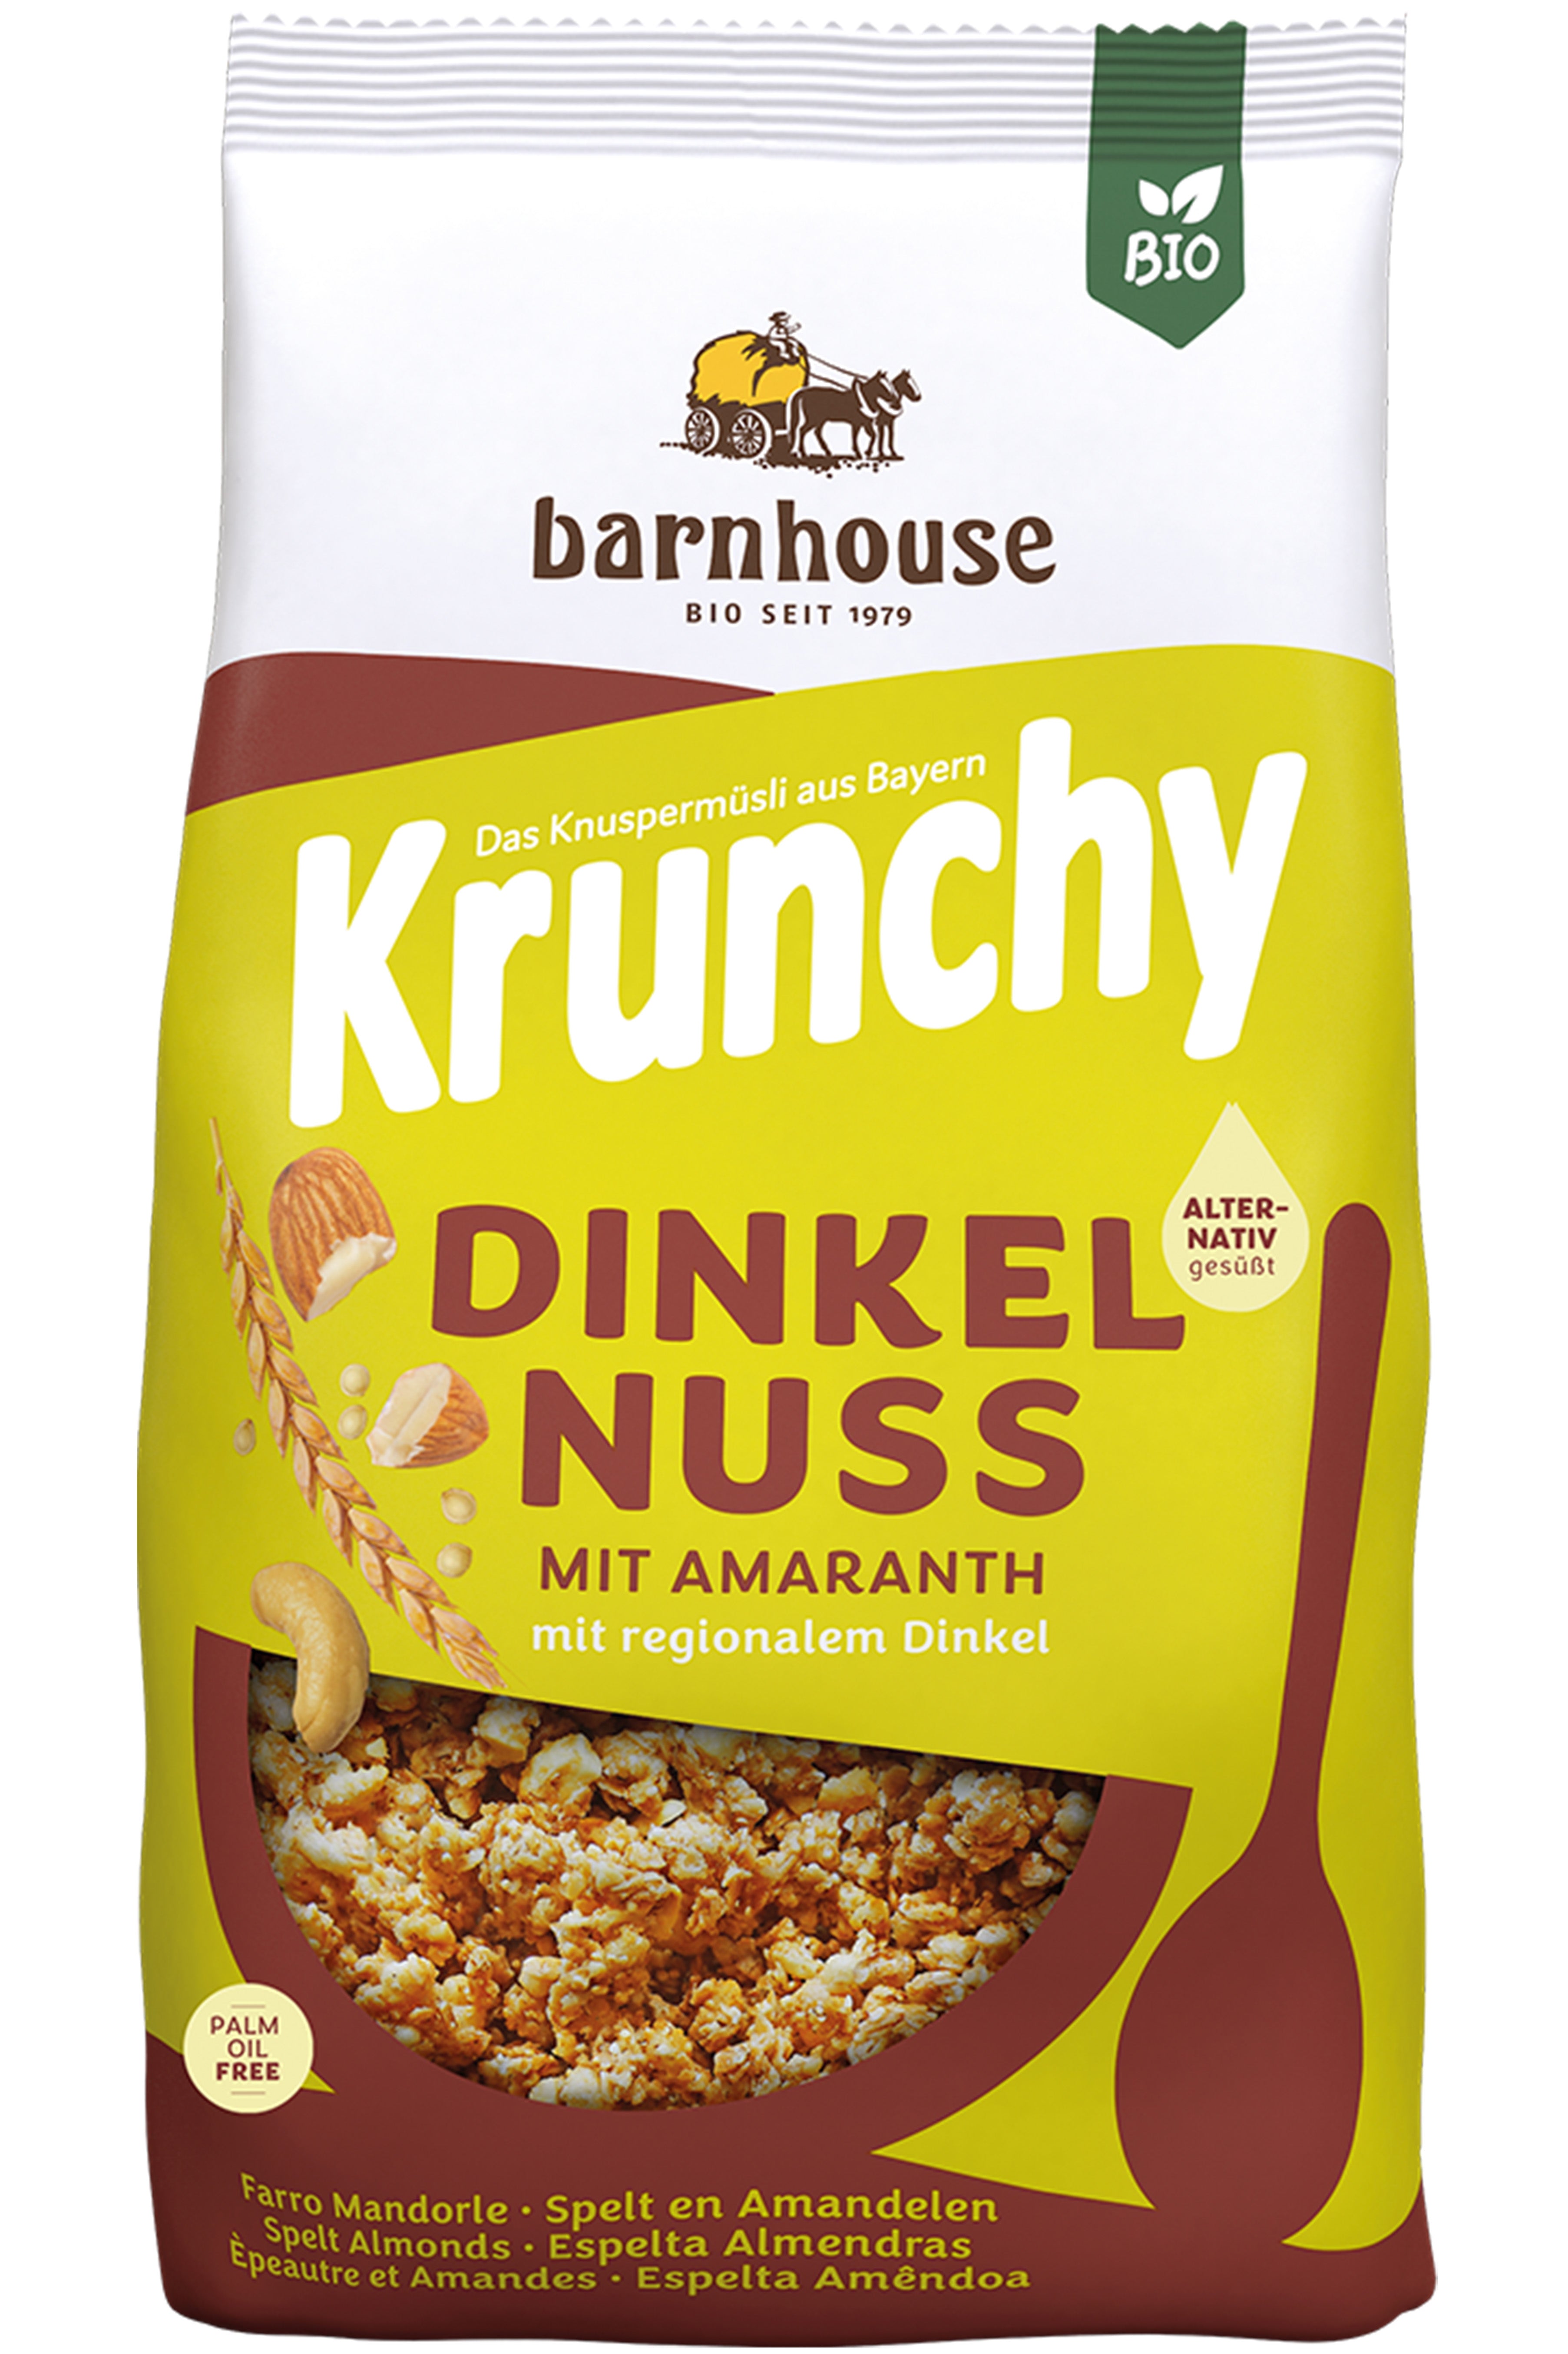 Krunchy Dinkel-Nuss mit Amaranth